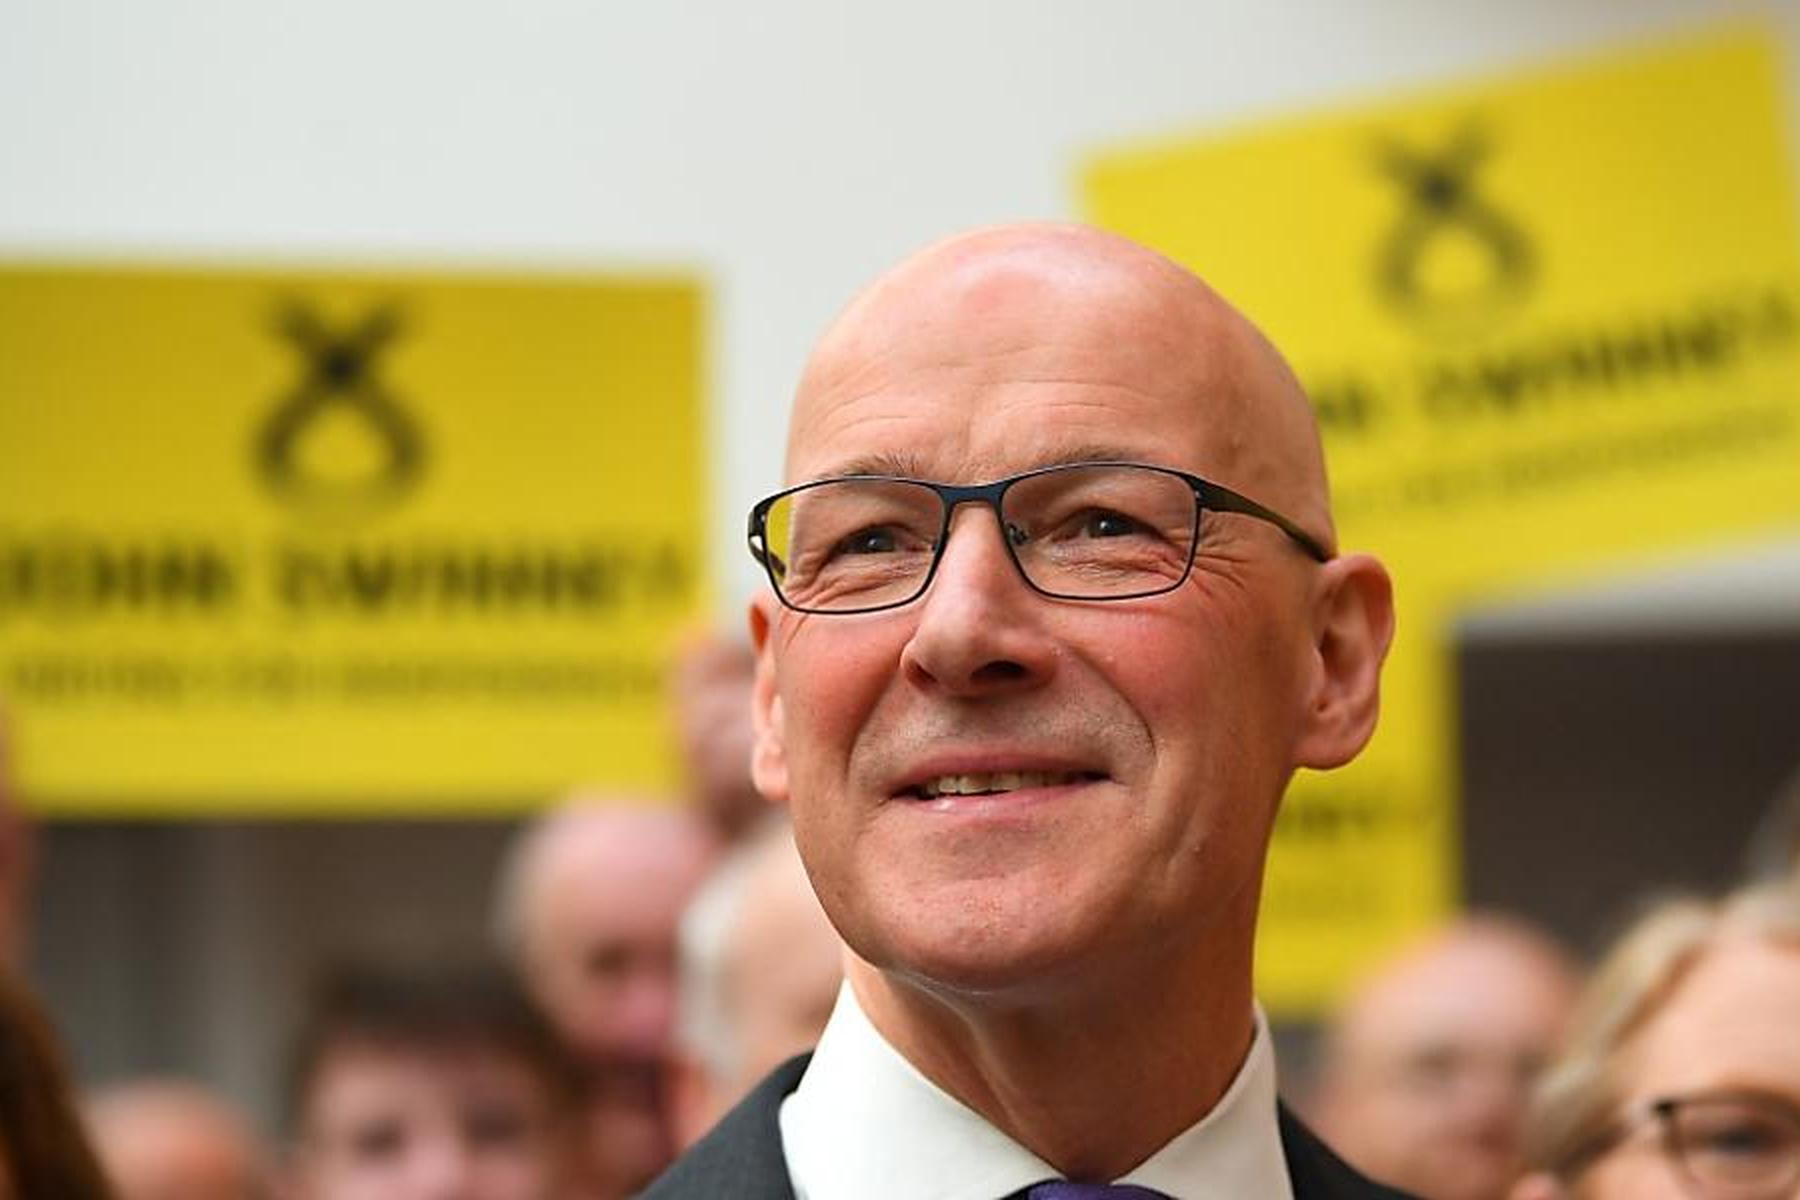 Einziger Kandidat: John Swinney zu neuem Chef der schottischen Regierungspartei ernannt